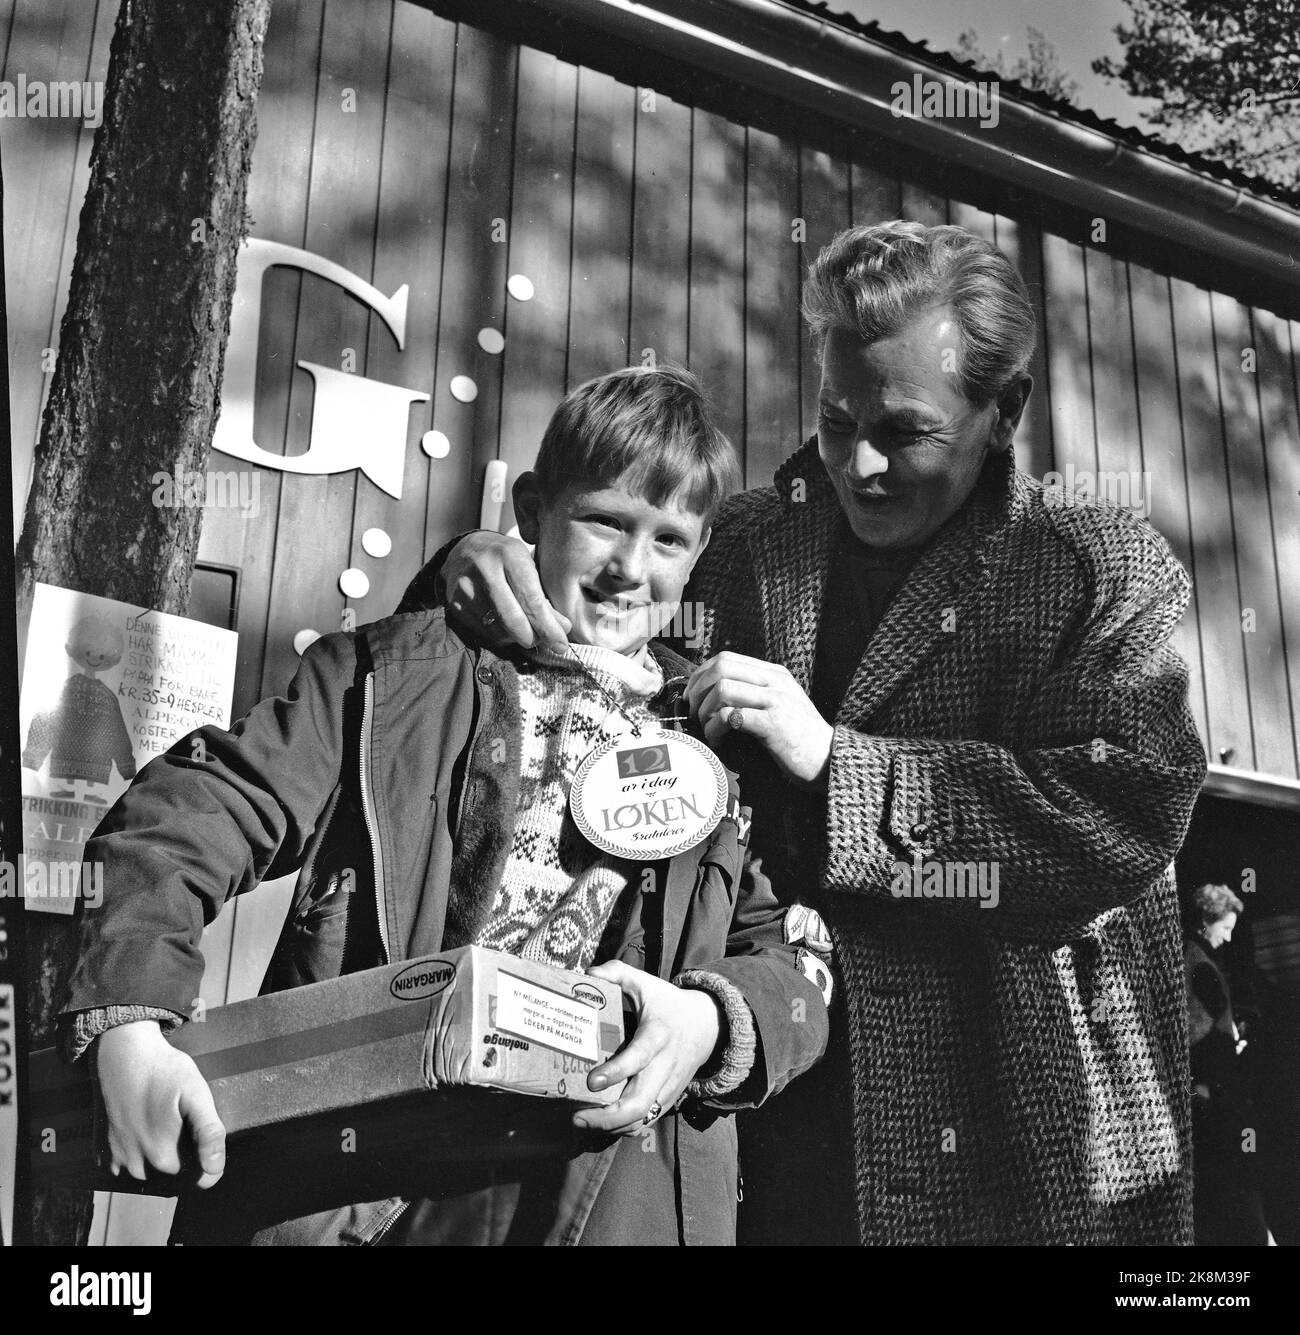 Magnor oktober 1965: KASSASUKSESS FOR NORSK MARGARIN Allehelgensdag kom nærmere ti tusen stappfulle biler fra Sverige til Magnor for å handle subsidierte norske matvarer som sukker, margarin og hvetemel. De aller fleste handlet i varehuset til 'margarinkongen' Per Løken. Her overrekker han gave til 12 år gamle Bo. Barn som fylte 12 år den dagen fikk 5 kg margarin i gave. De var da 'Margarinmodne' (evt Sukkerunger) med rett til å ta med egen kvote av de dyrebare varene. Flere biler hadde med seg lånte unger i denne anledning.  Foto: Aage Storløkken / Aktuell / NTB Stock Photo